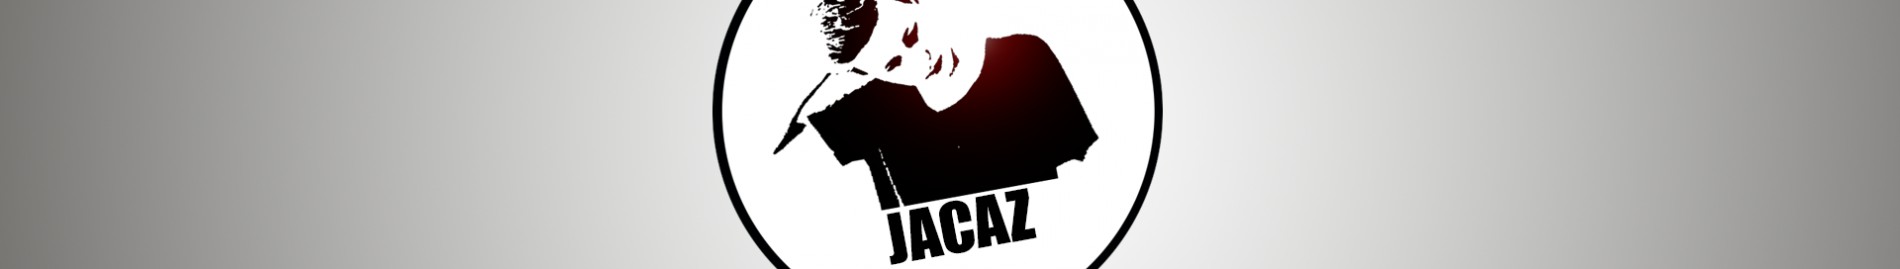 Jacaz